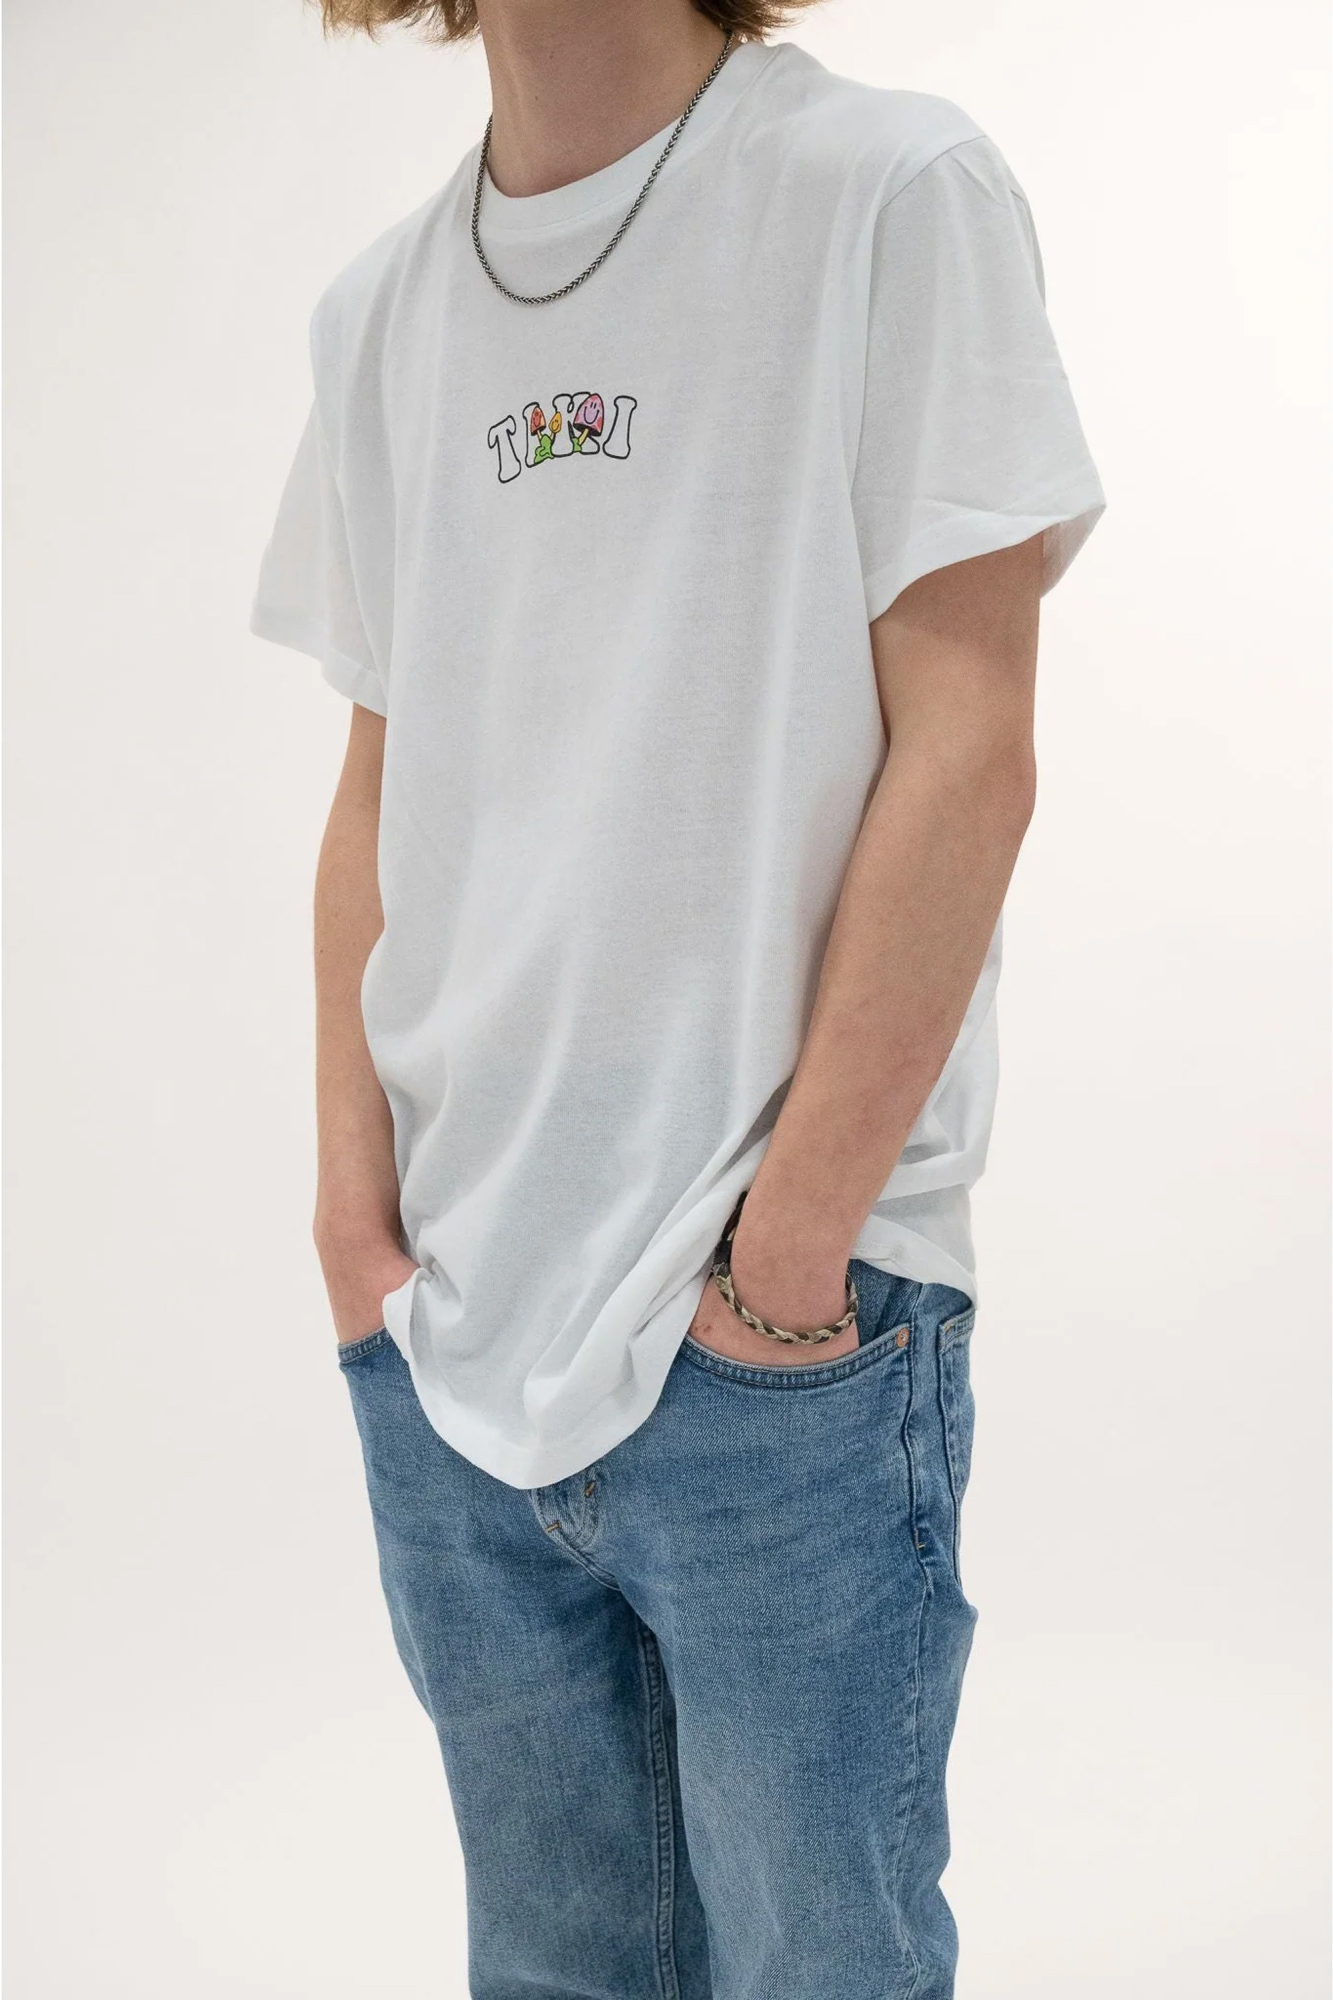 Tiki Unisex Party Wave Short Sleeve T-shirt White - Size: Large